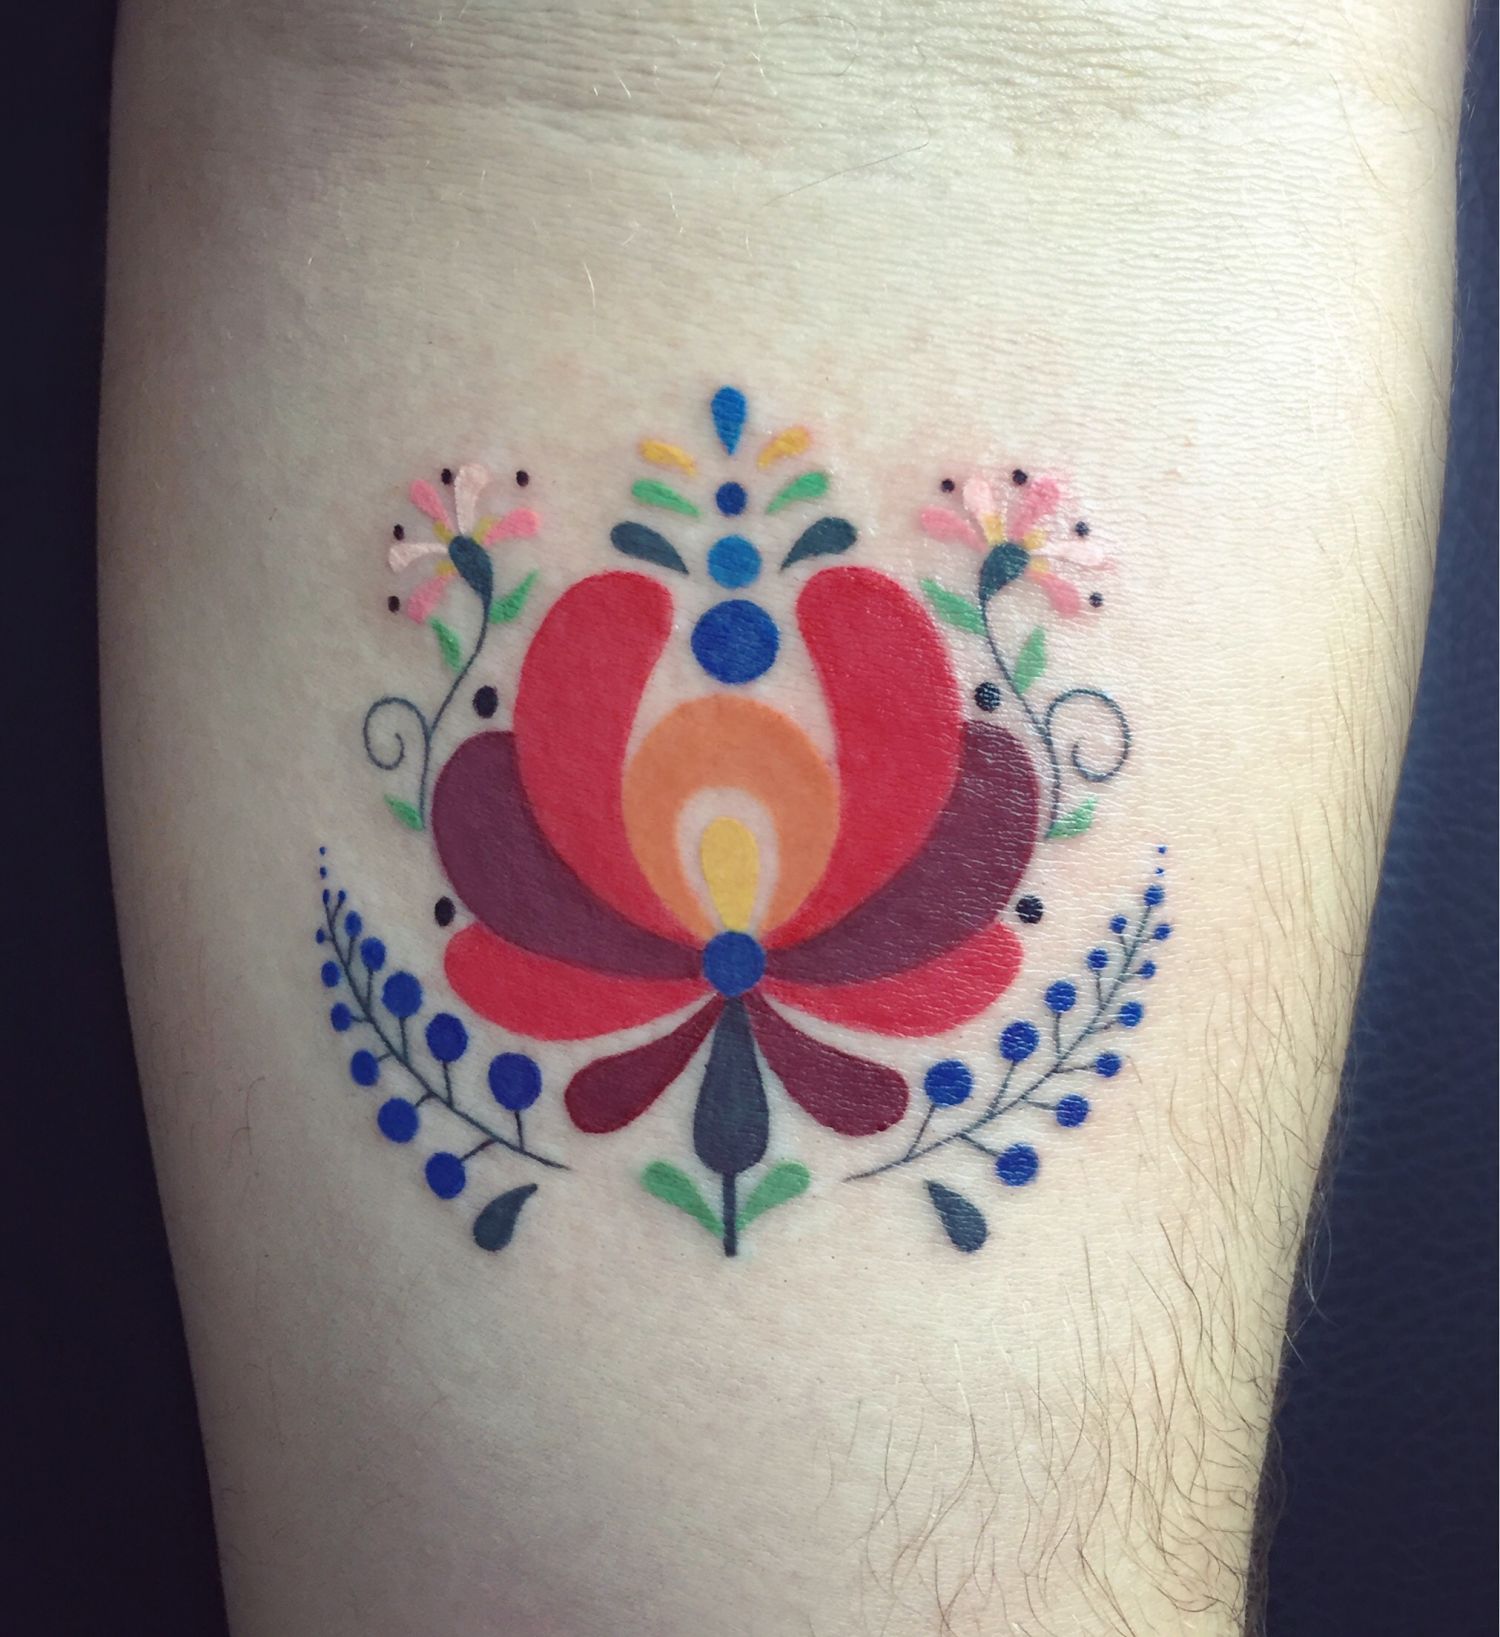 Alkar tetoválás, Realisztikus tetoválás, Színes tetoválás, Virág tetoválás